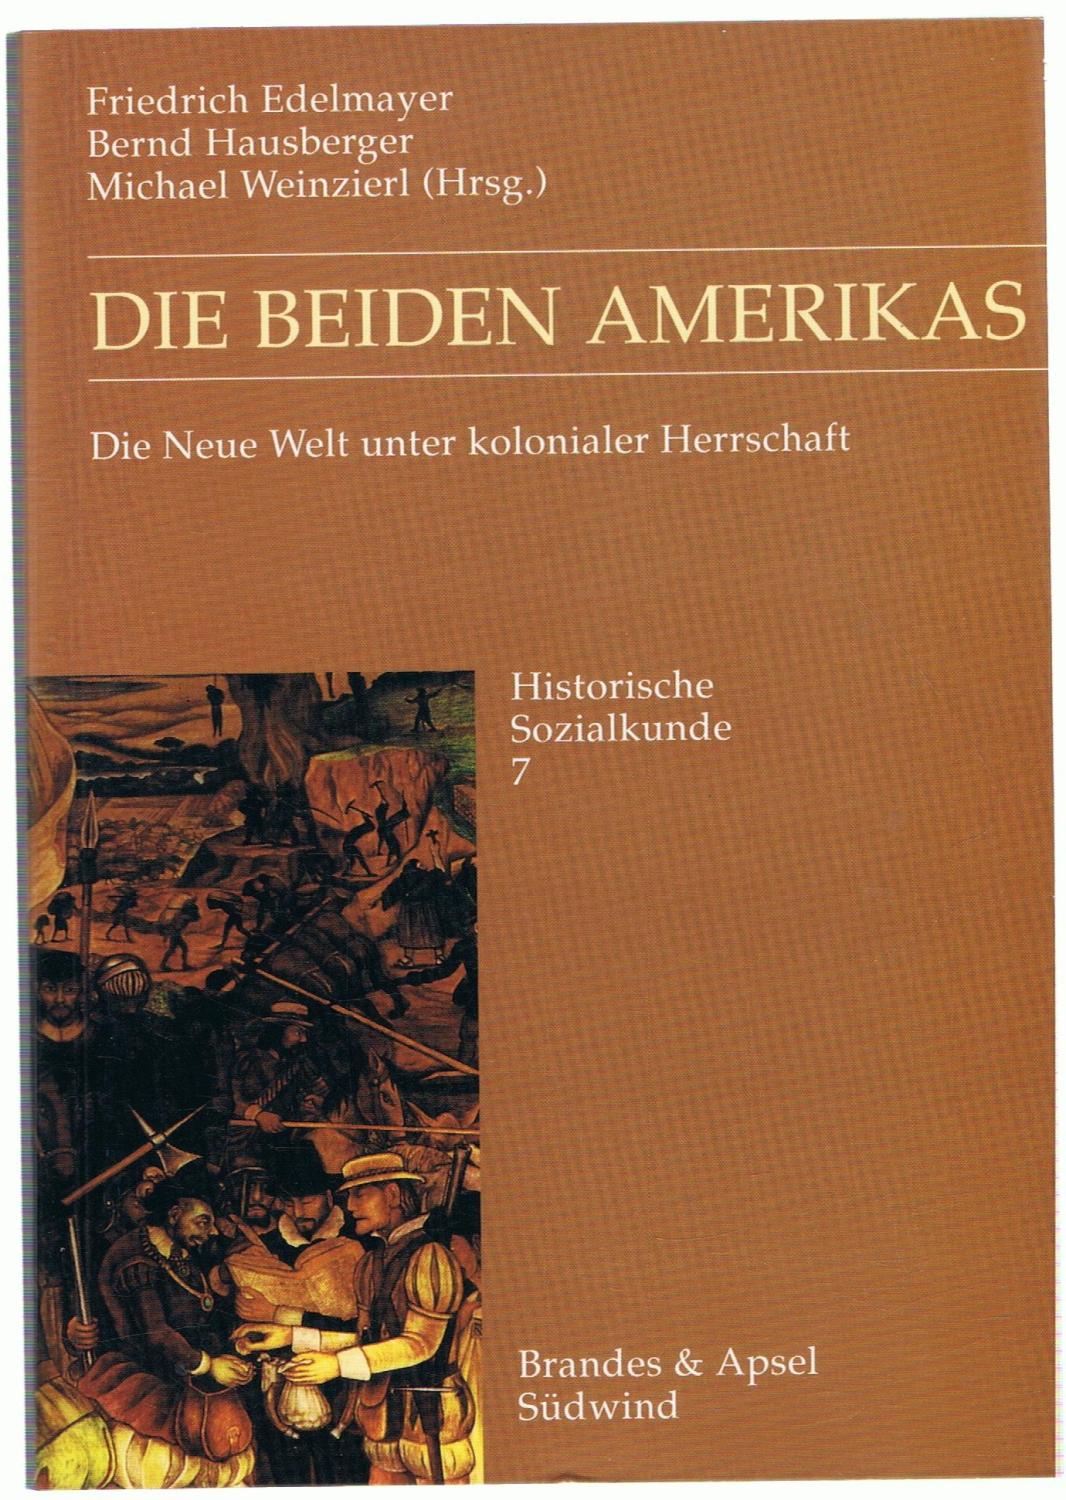 DIE BEIDEN AMERIKAS. Die Neue Welt unter kolonialer Herrschaft. - Edelmayer / Hausberger / Weinzierl.